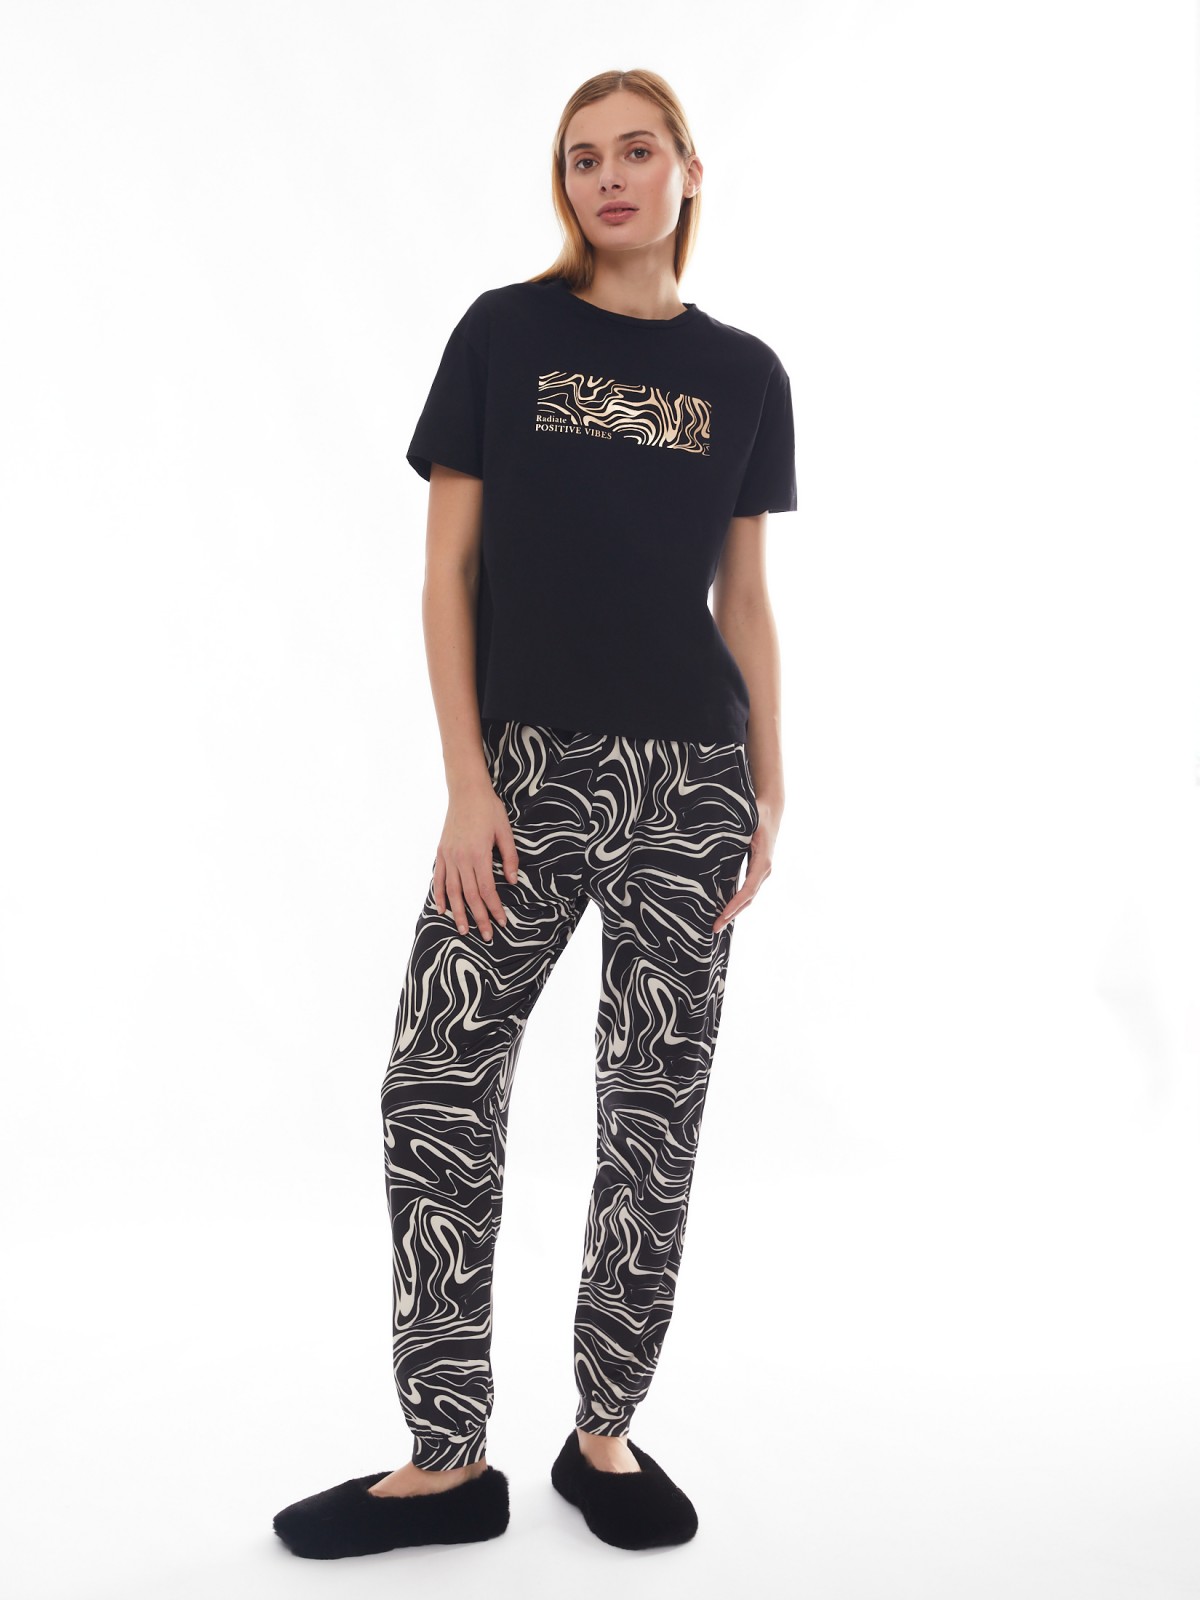 Домашний пижамный комплект (футболка и штаны) zolla 624138726103, цвет черный, размер XS